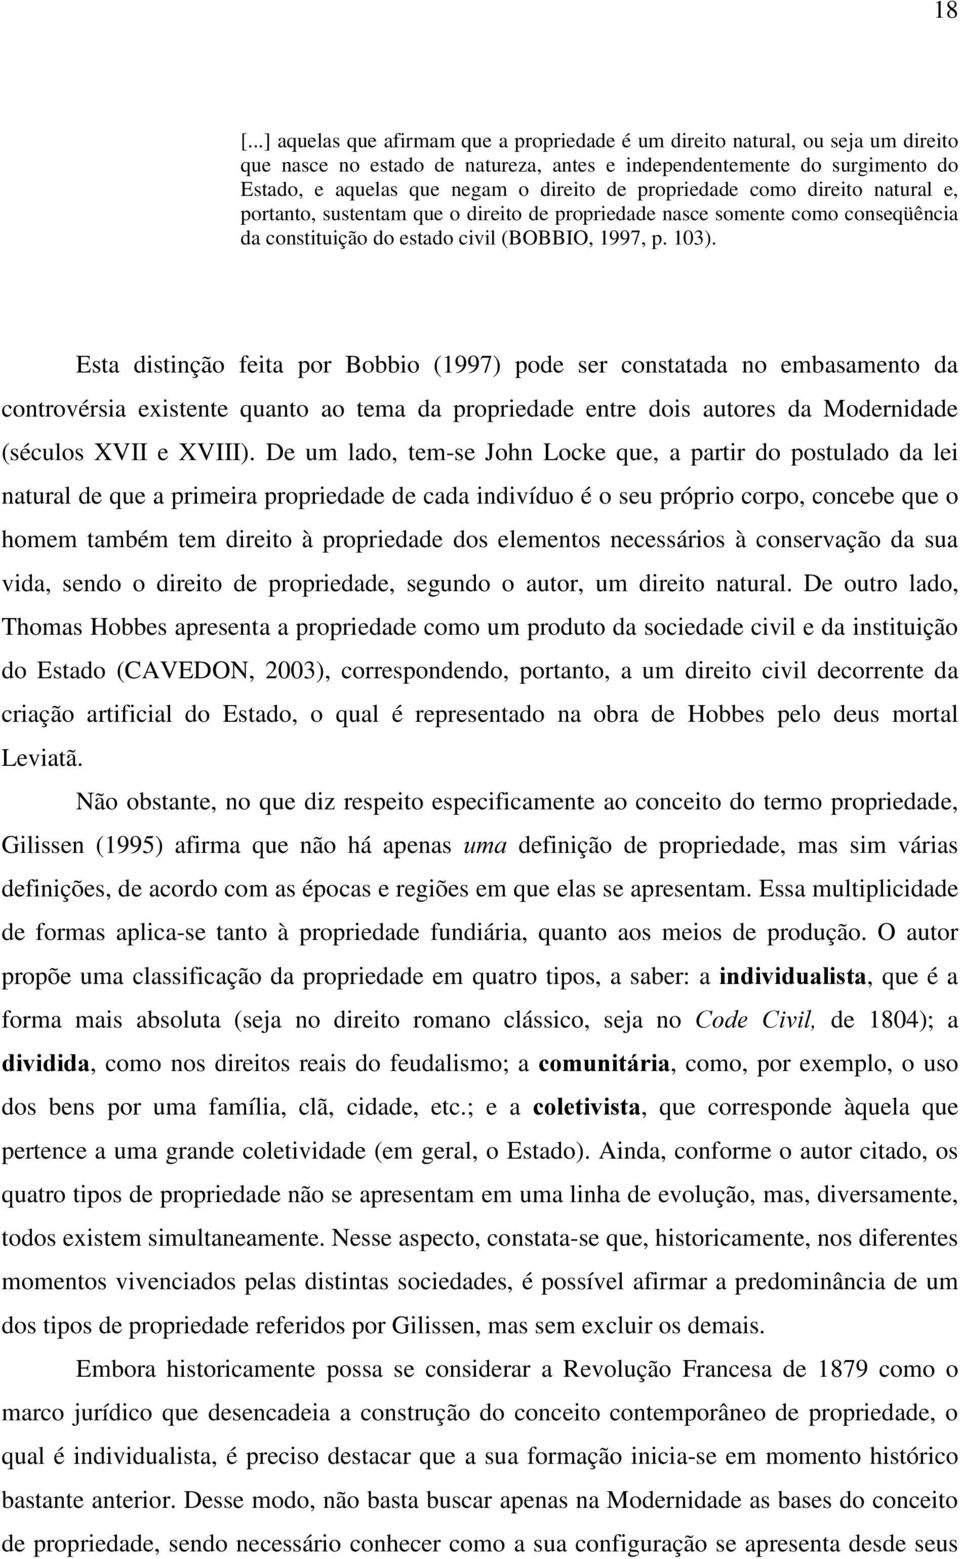 Esta distinção feita por Bobbio (1997) pode ser constatada no embasamento da controvérsia existente quanto ao tema da propriedade entre dois autores da Modernidade (séculos XVII e XVIII).